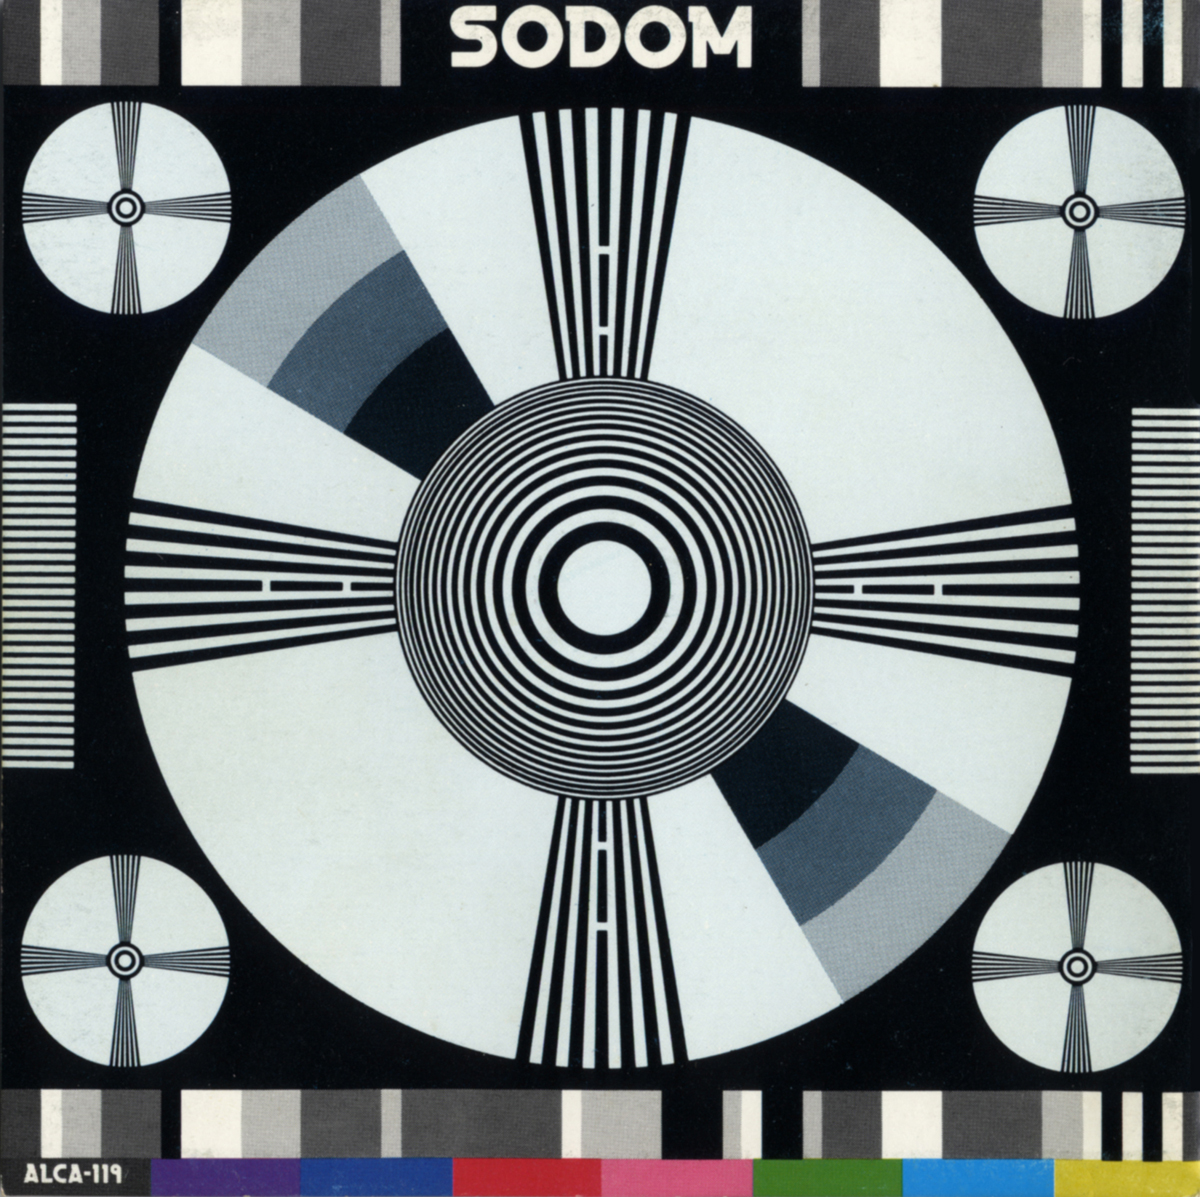 Sodom “Sodom”